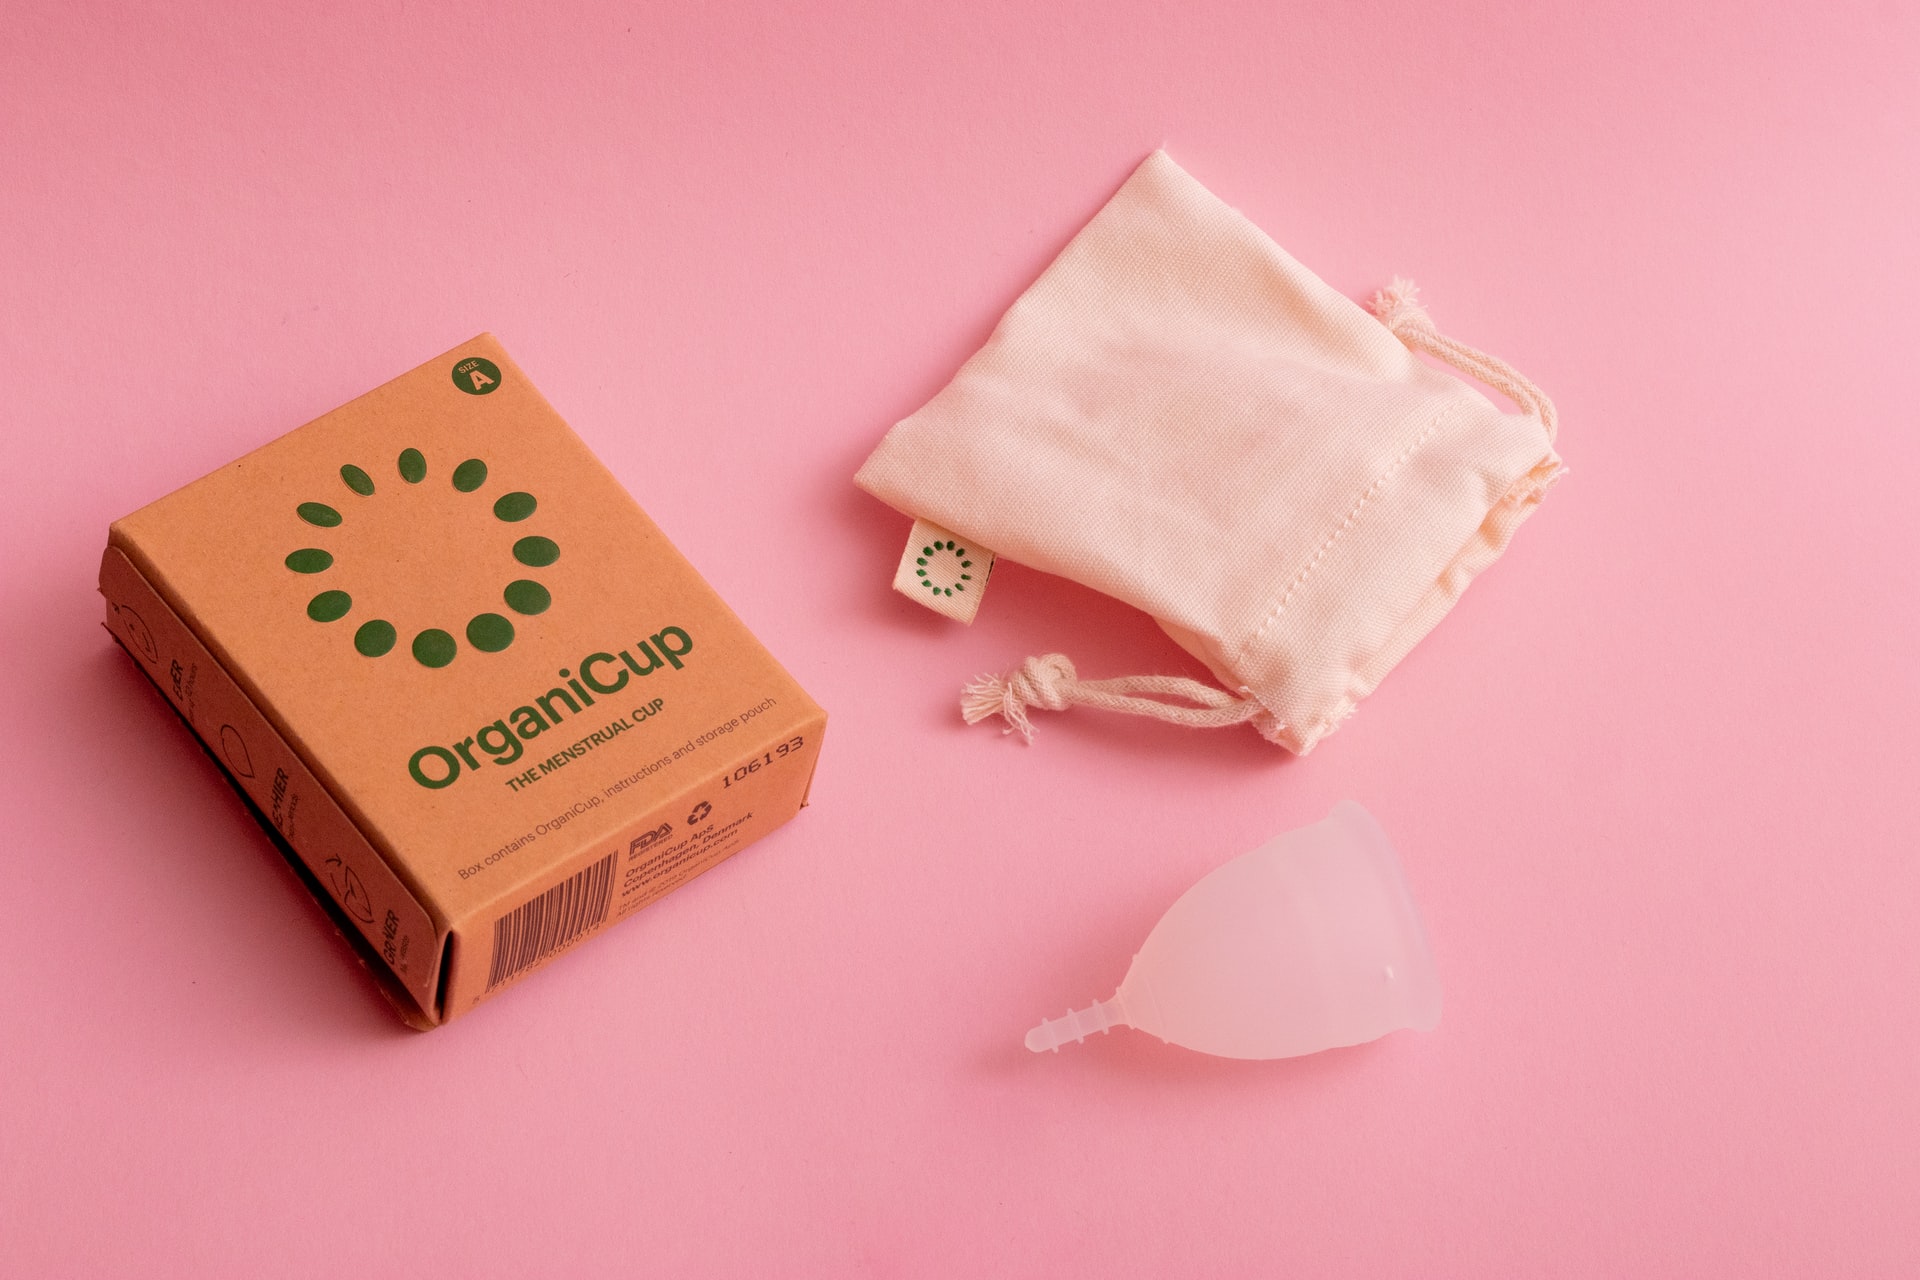 Kubeczki menstruacyjne – zero waste w higienie intymnej?